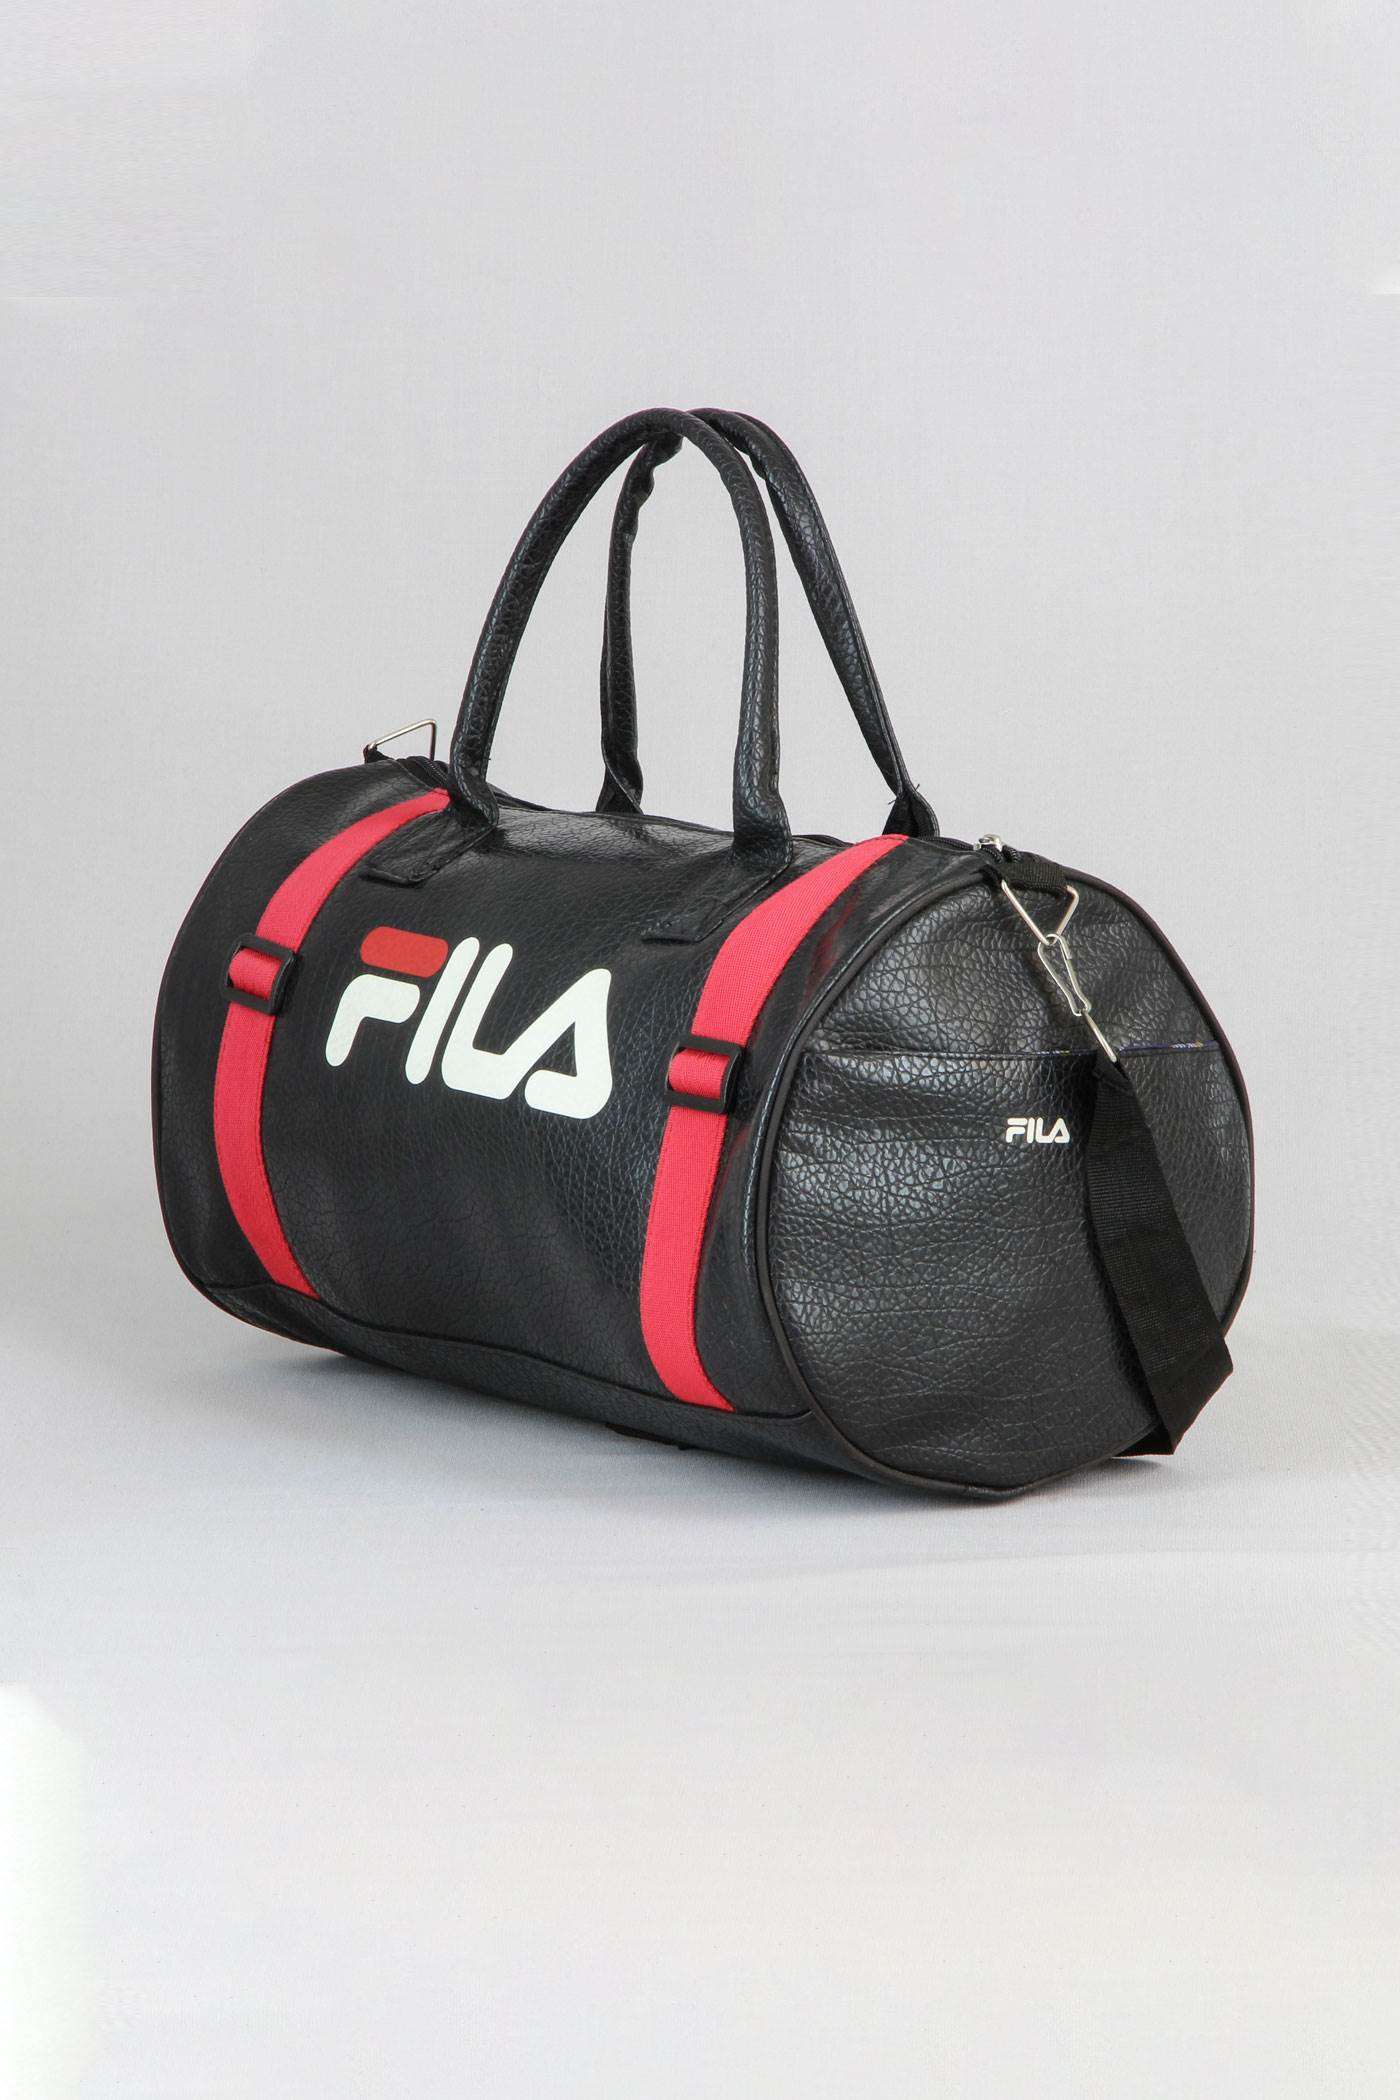 FILA mens sports bag